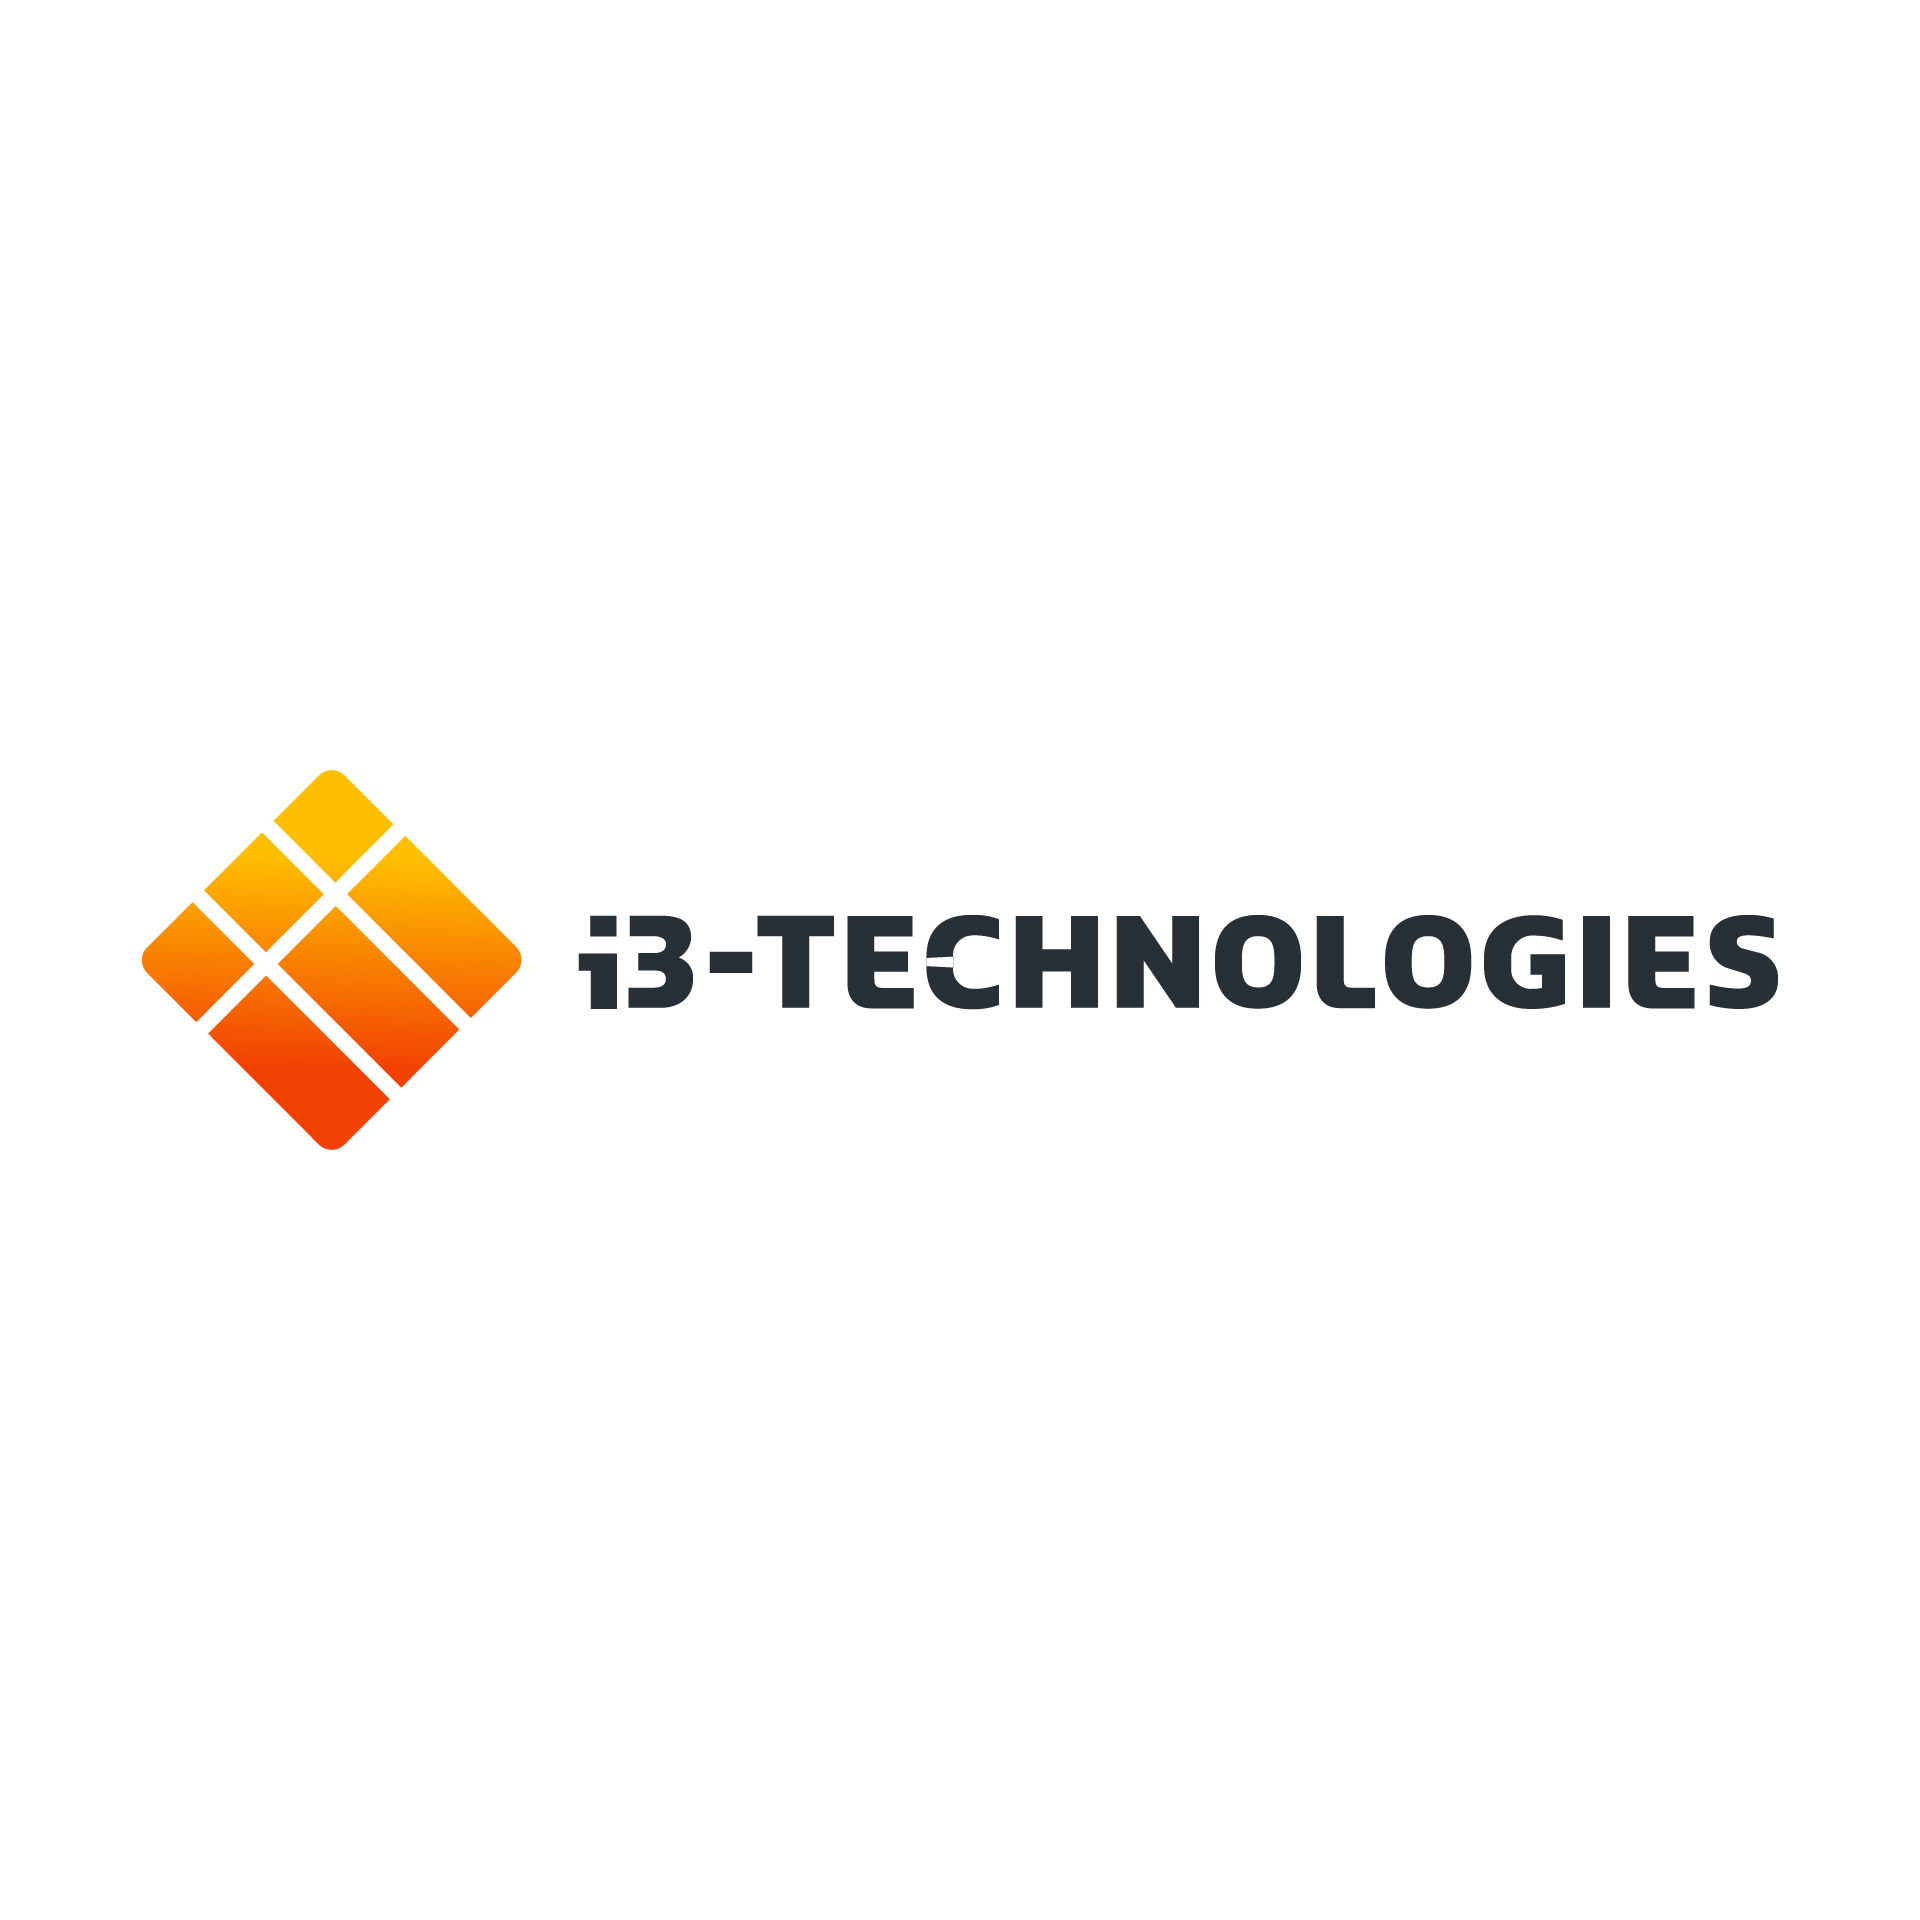 i3 technologies